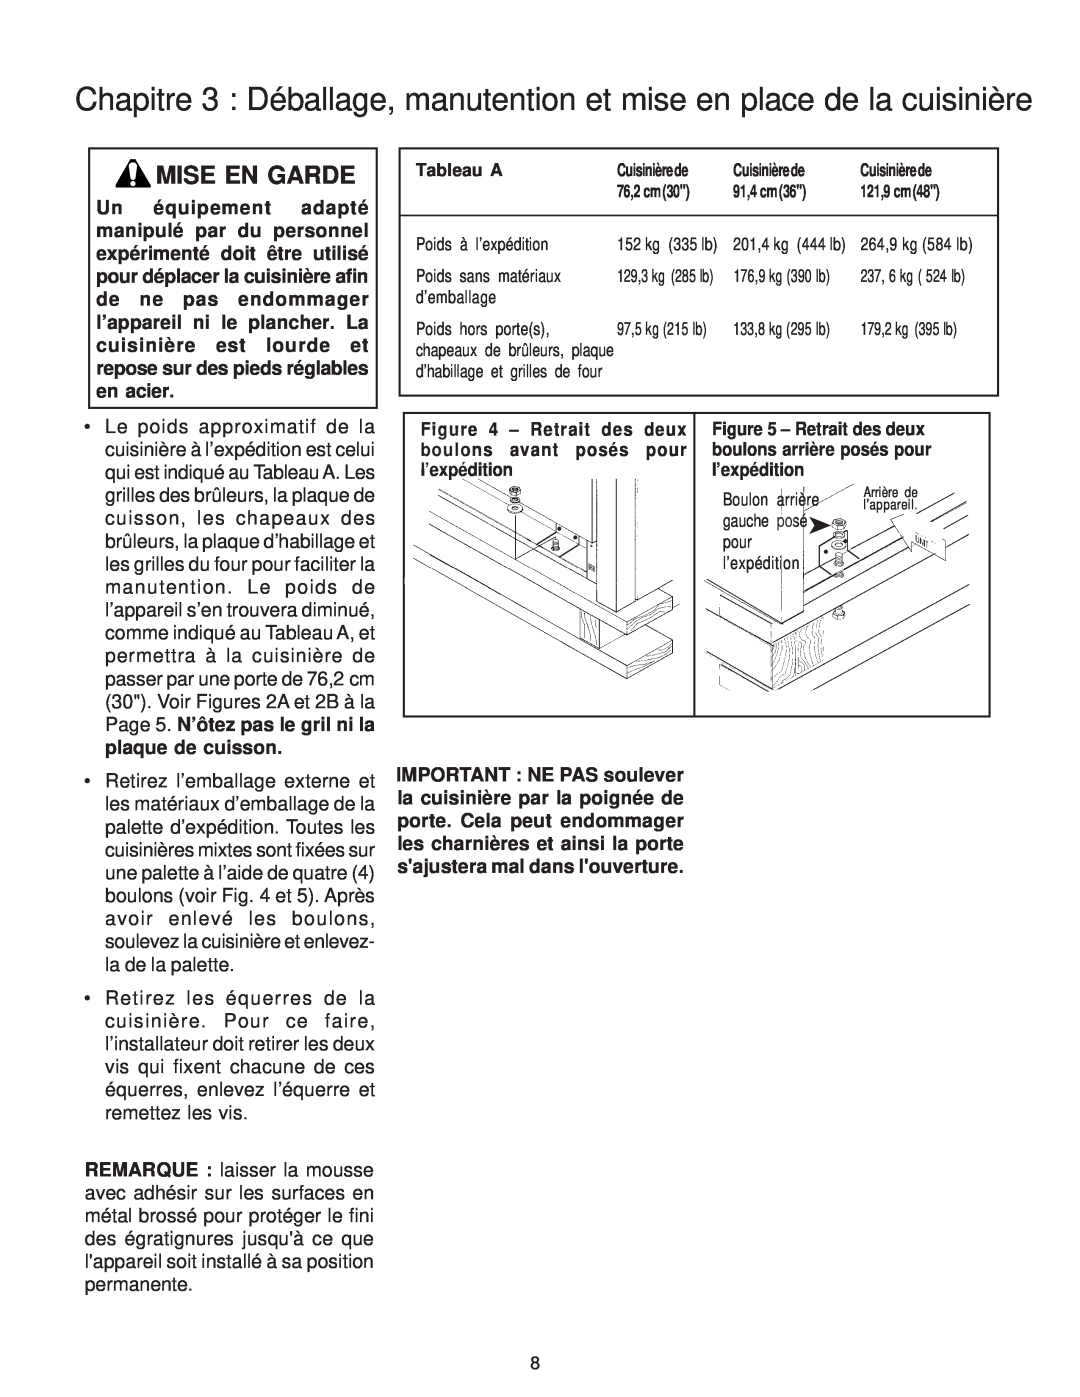 Thermador PD30 installation instructions Mise En Garde, Page 5. N’ôtez pas le gril ni la, plaque de cuisson 